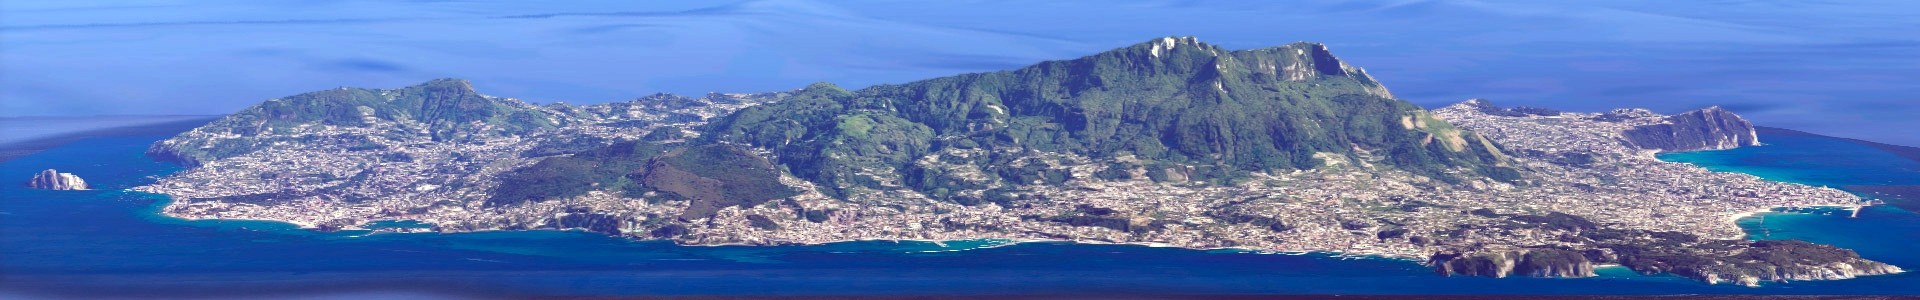 L'Isola d'Ischia, già ricchissima di sorgenti di acque termali dalle innumerevoli virtù terapeutiche, rinomata nel mondo per le Terme di Ischia